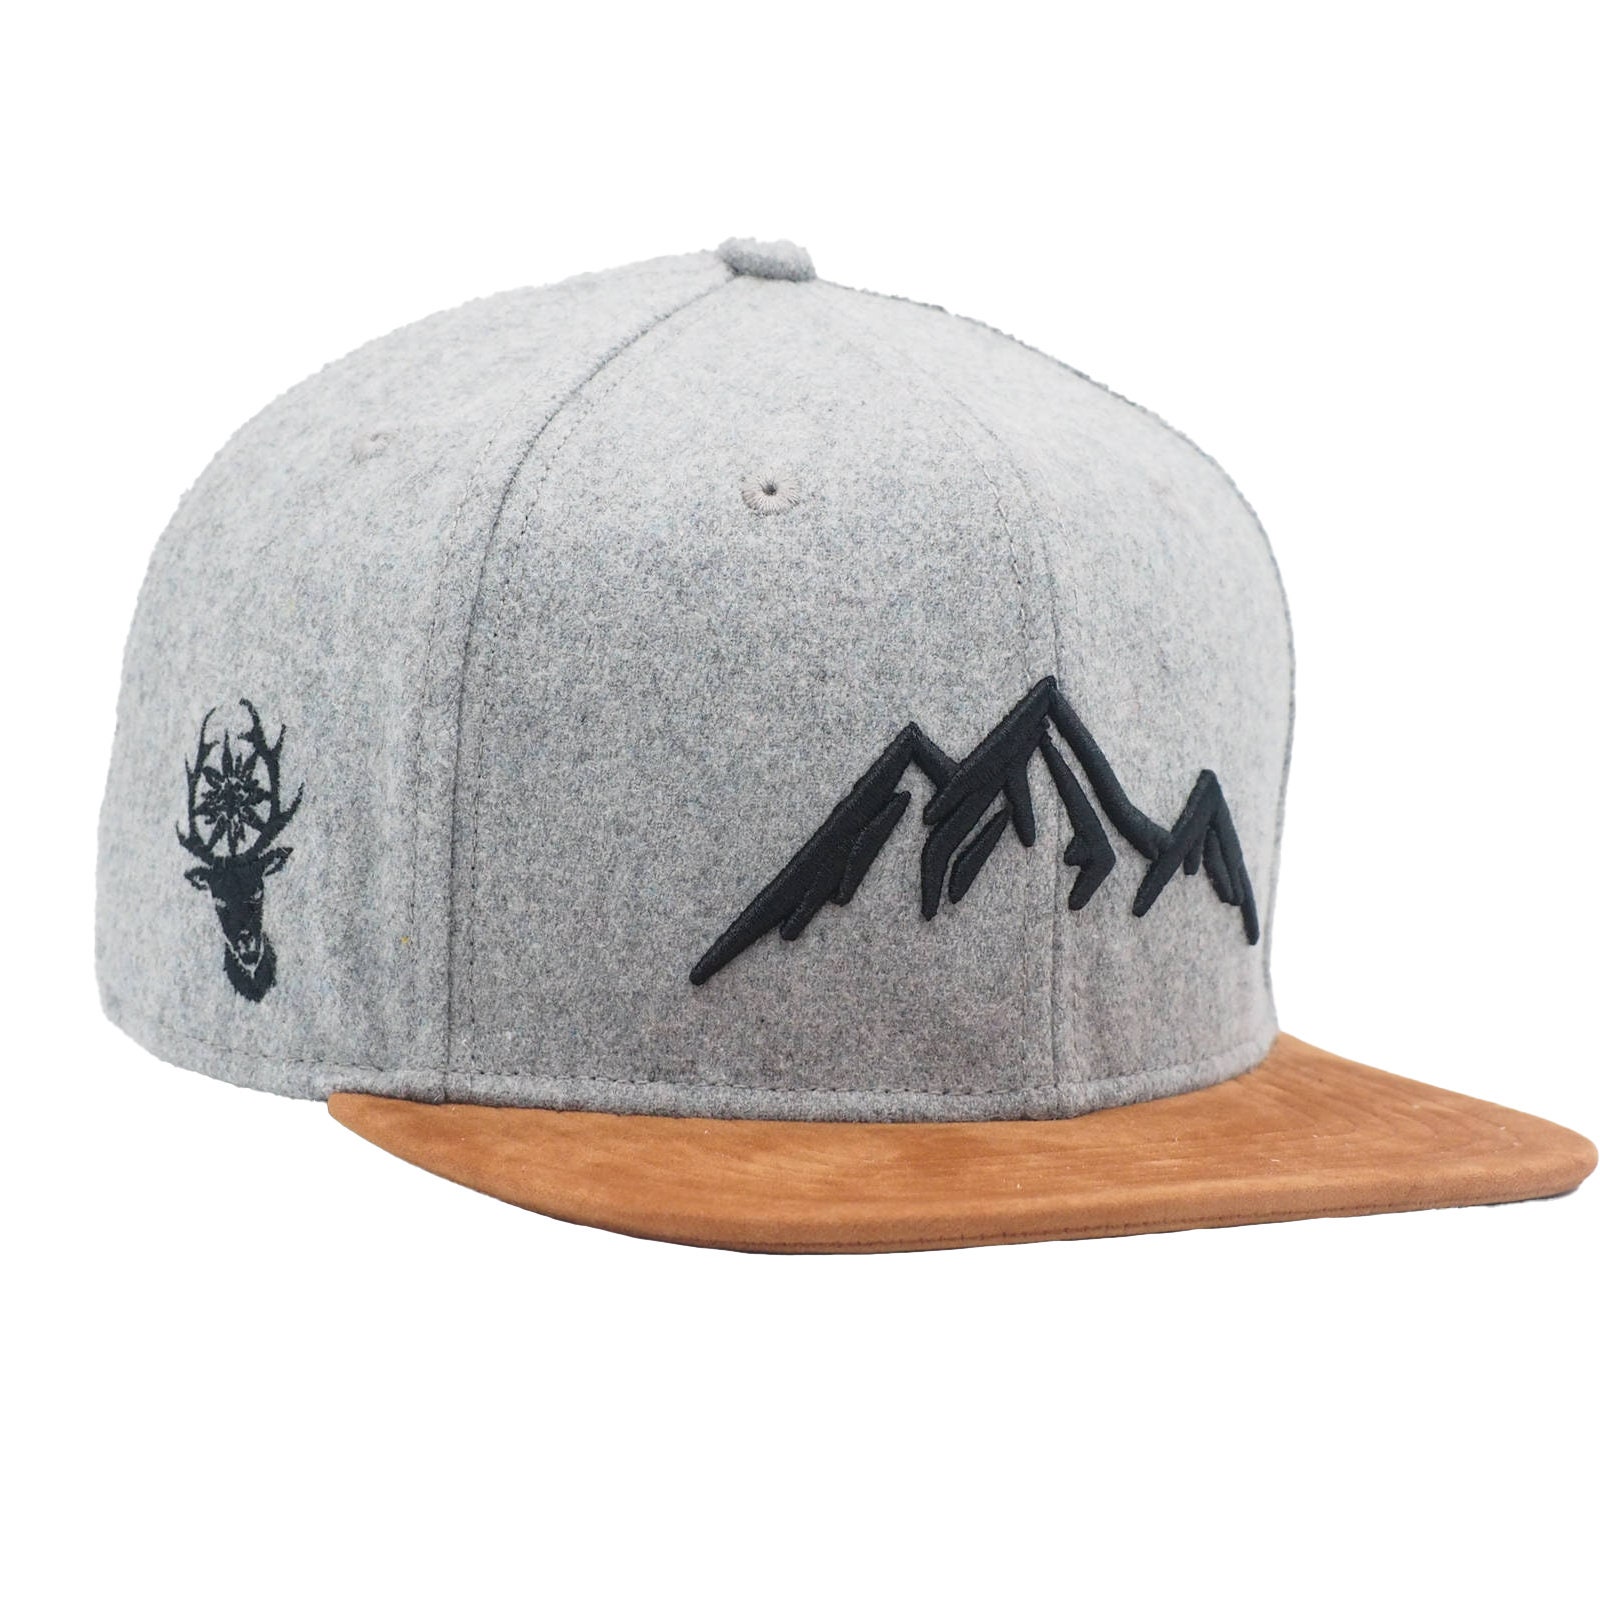 Mountaineering hat -  México